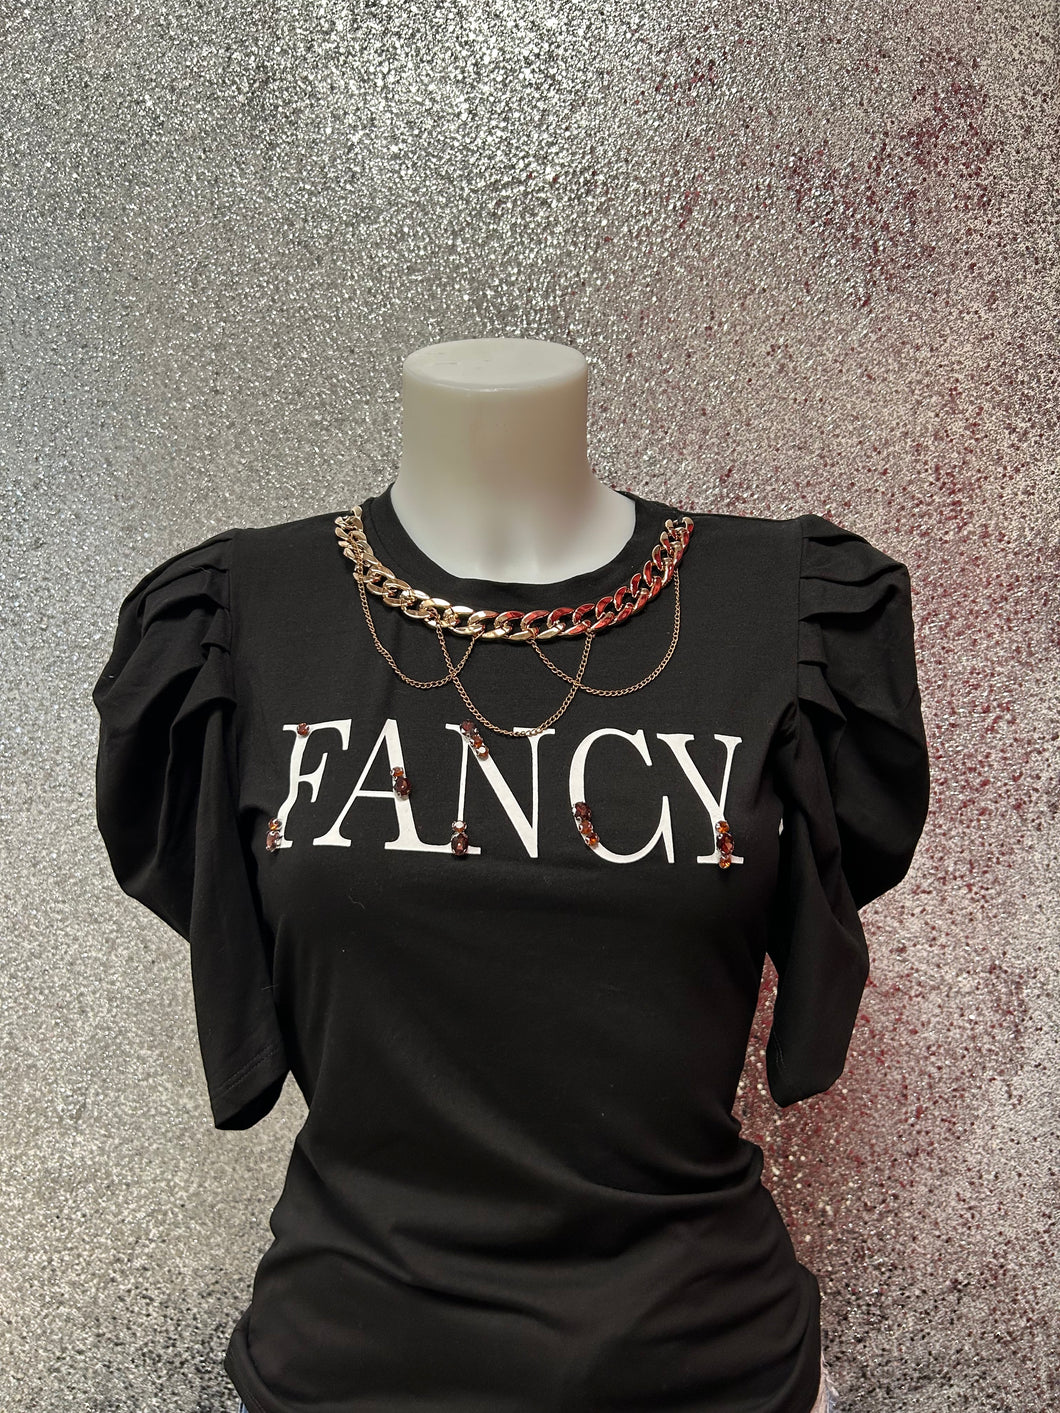 “Fancy” Top